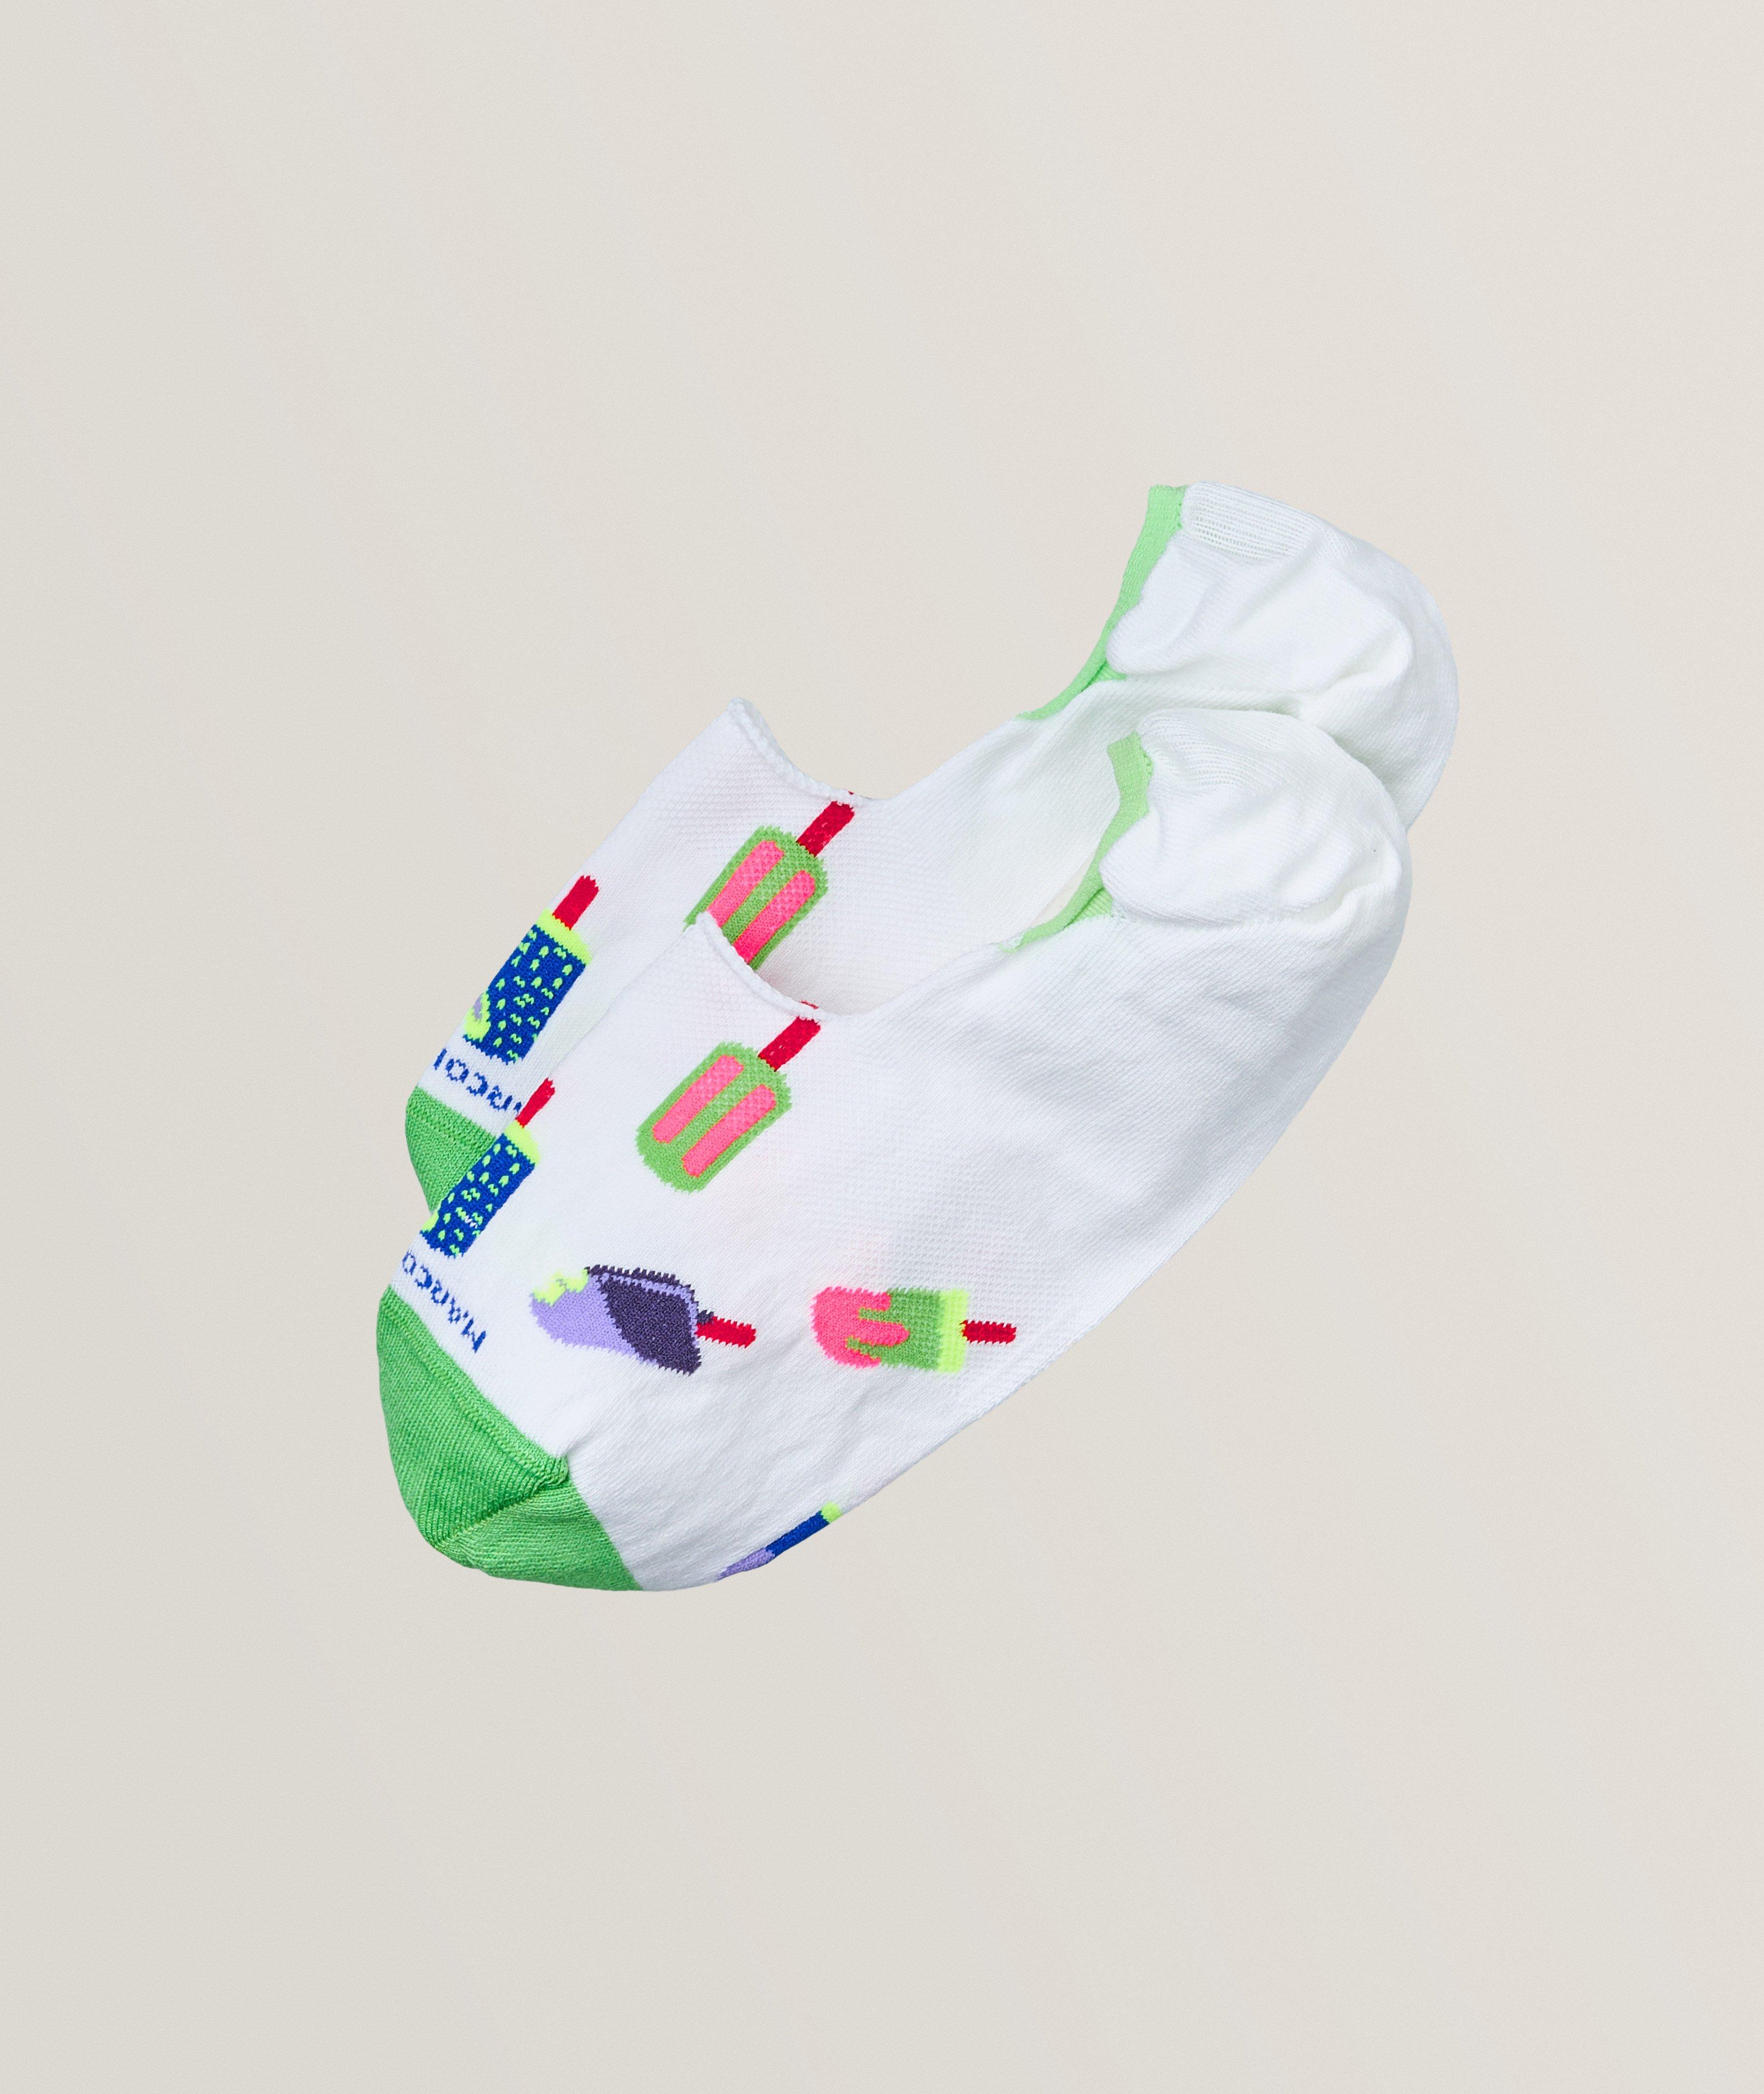 Chaussettes courtes en coton à motif de cornets de crème glacée image 0